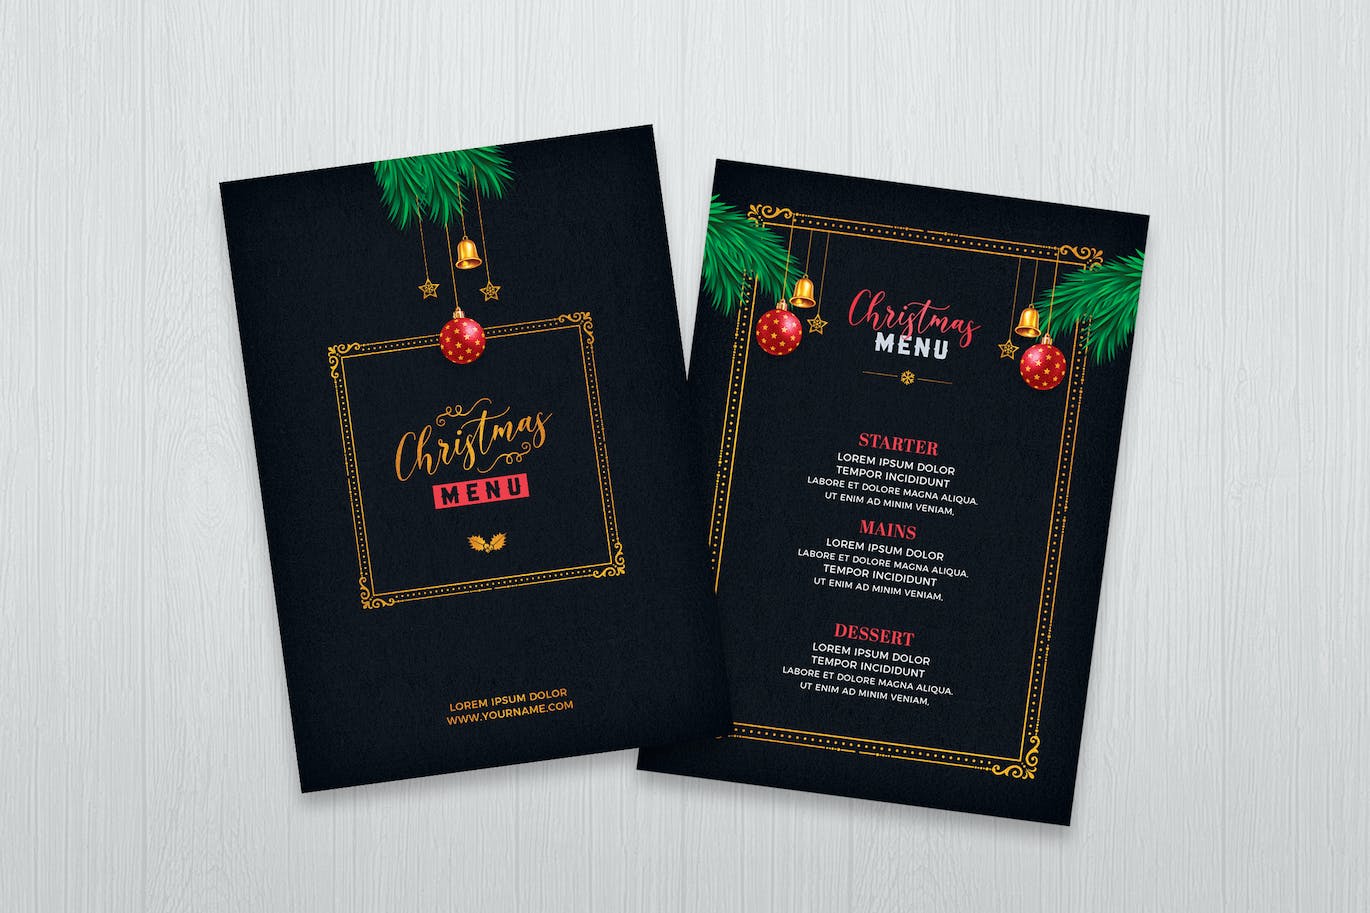 圣诞节餐厅菜单设计模板 (PSD)